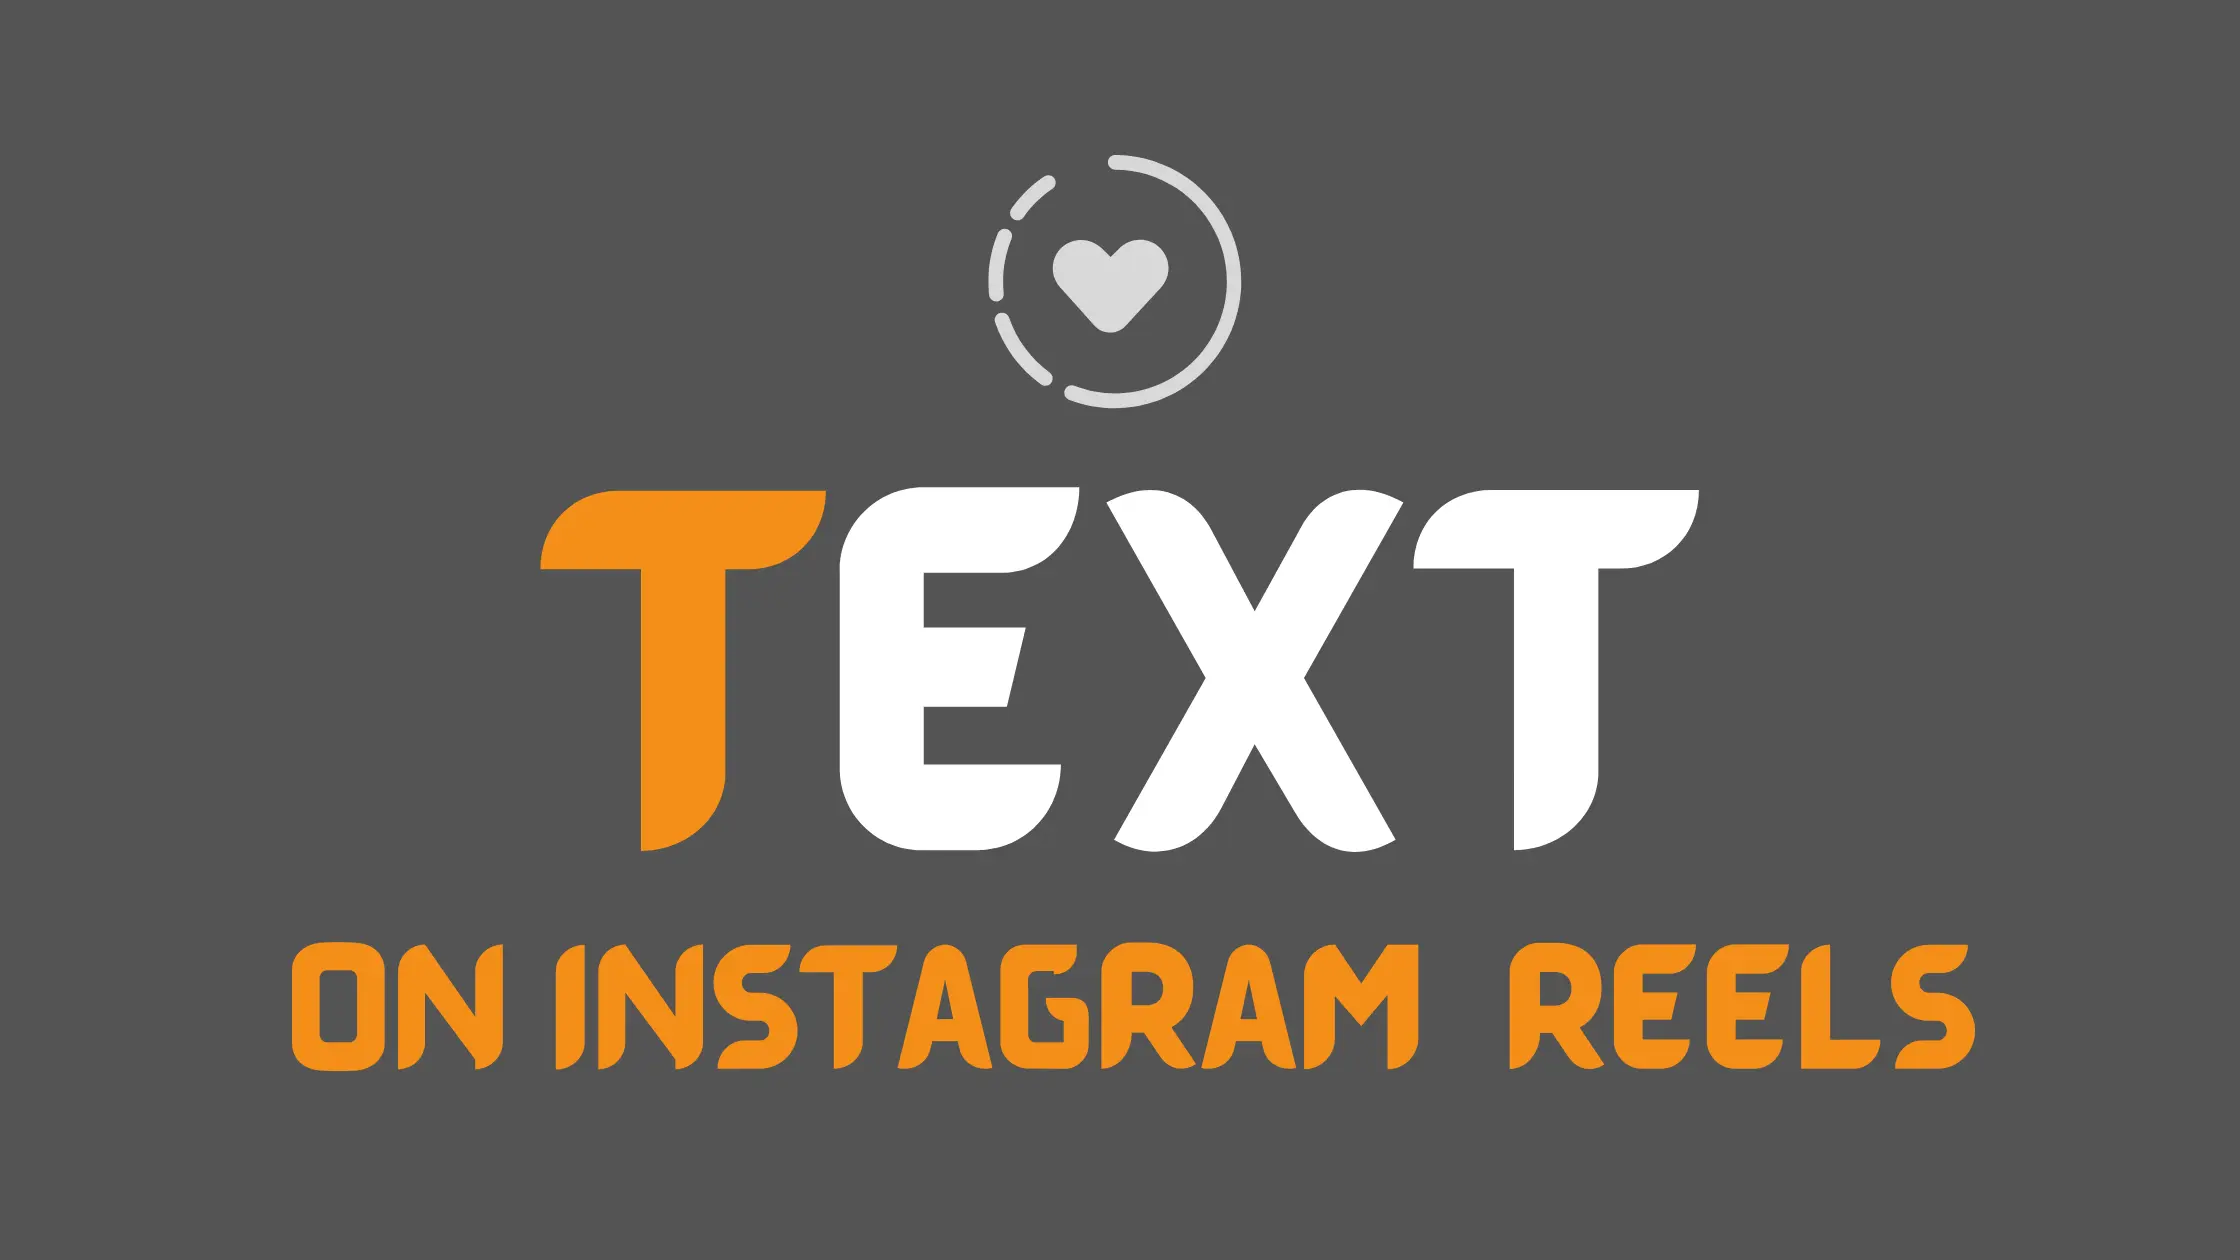 Với mẹo thêm văn bản vào Instagram Reels của thedigitalmds, bạn sẽ dễ dàng tạo nên những video độc đáo và sáng tạo hơn. Hơn nữa, nét chữ dành riêng cho Instagram Reels sẽ giúp tăng tính thẩm mỹ cho video của bạn và thu hút được nhiều người xem hơn.